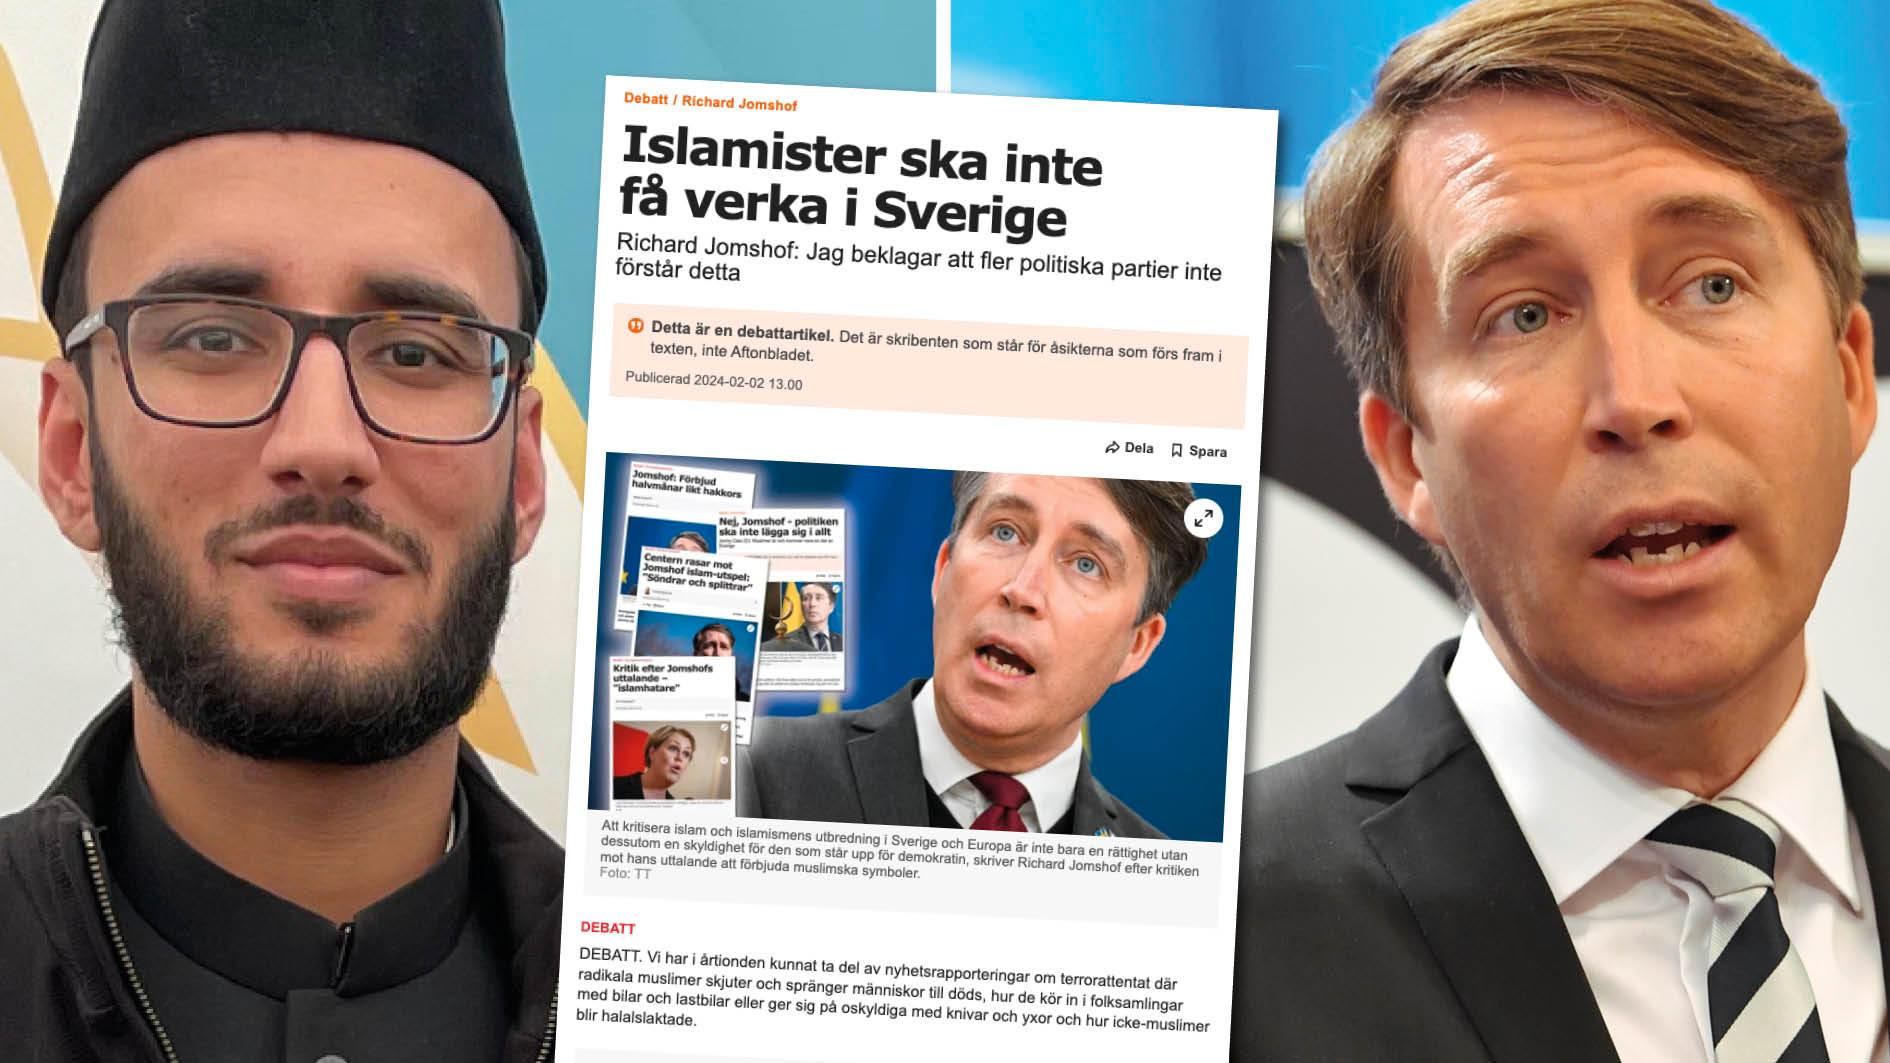 Sverigedemokraten Richard Jomshof försöker få allmänheten att tro på felaktig information för att påverka människor till att kritisera islam, skriver imamen Musab Rashid i en replik.